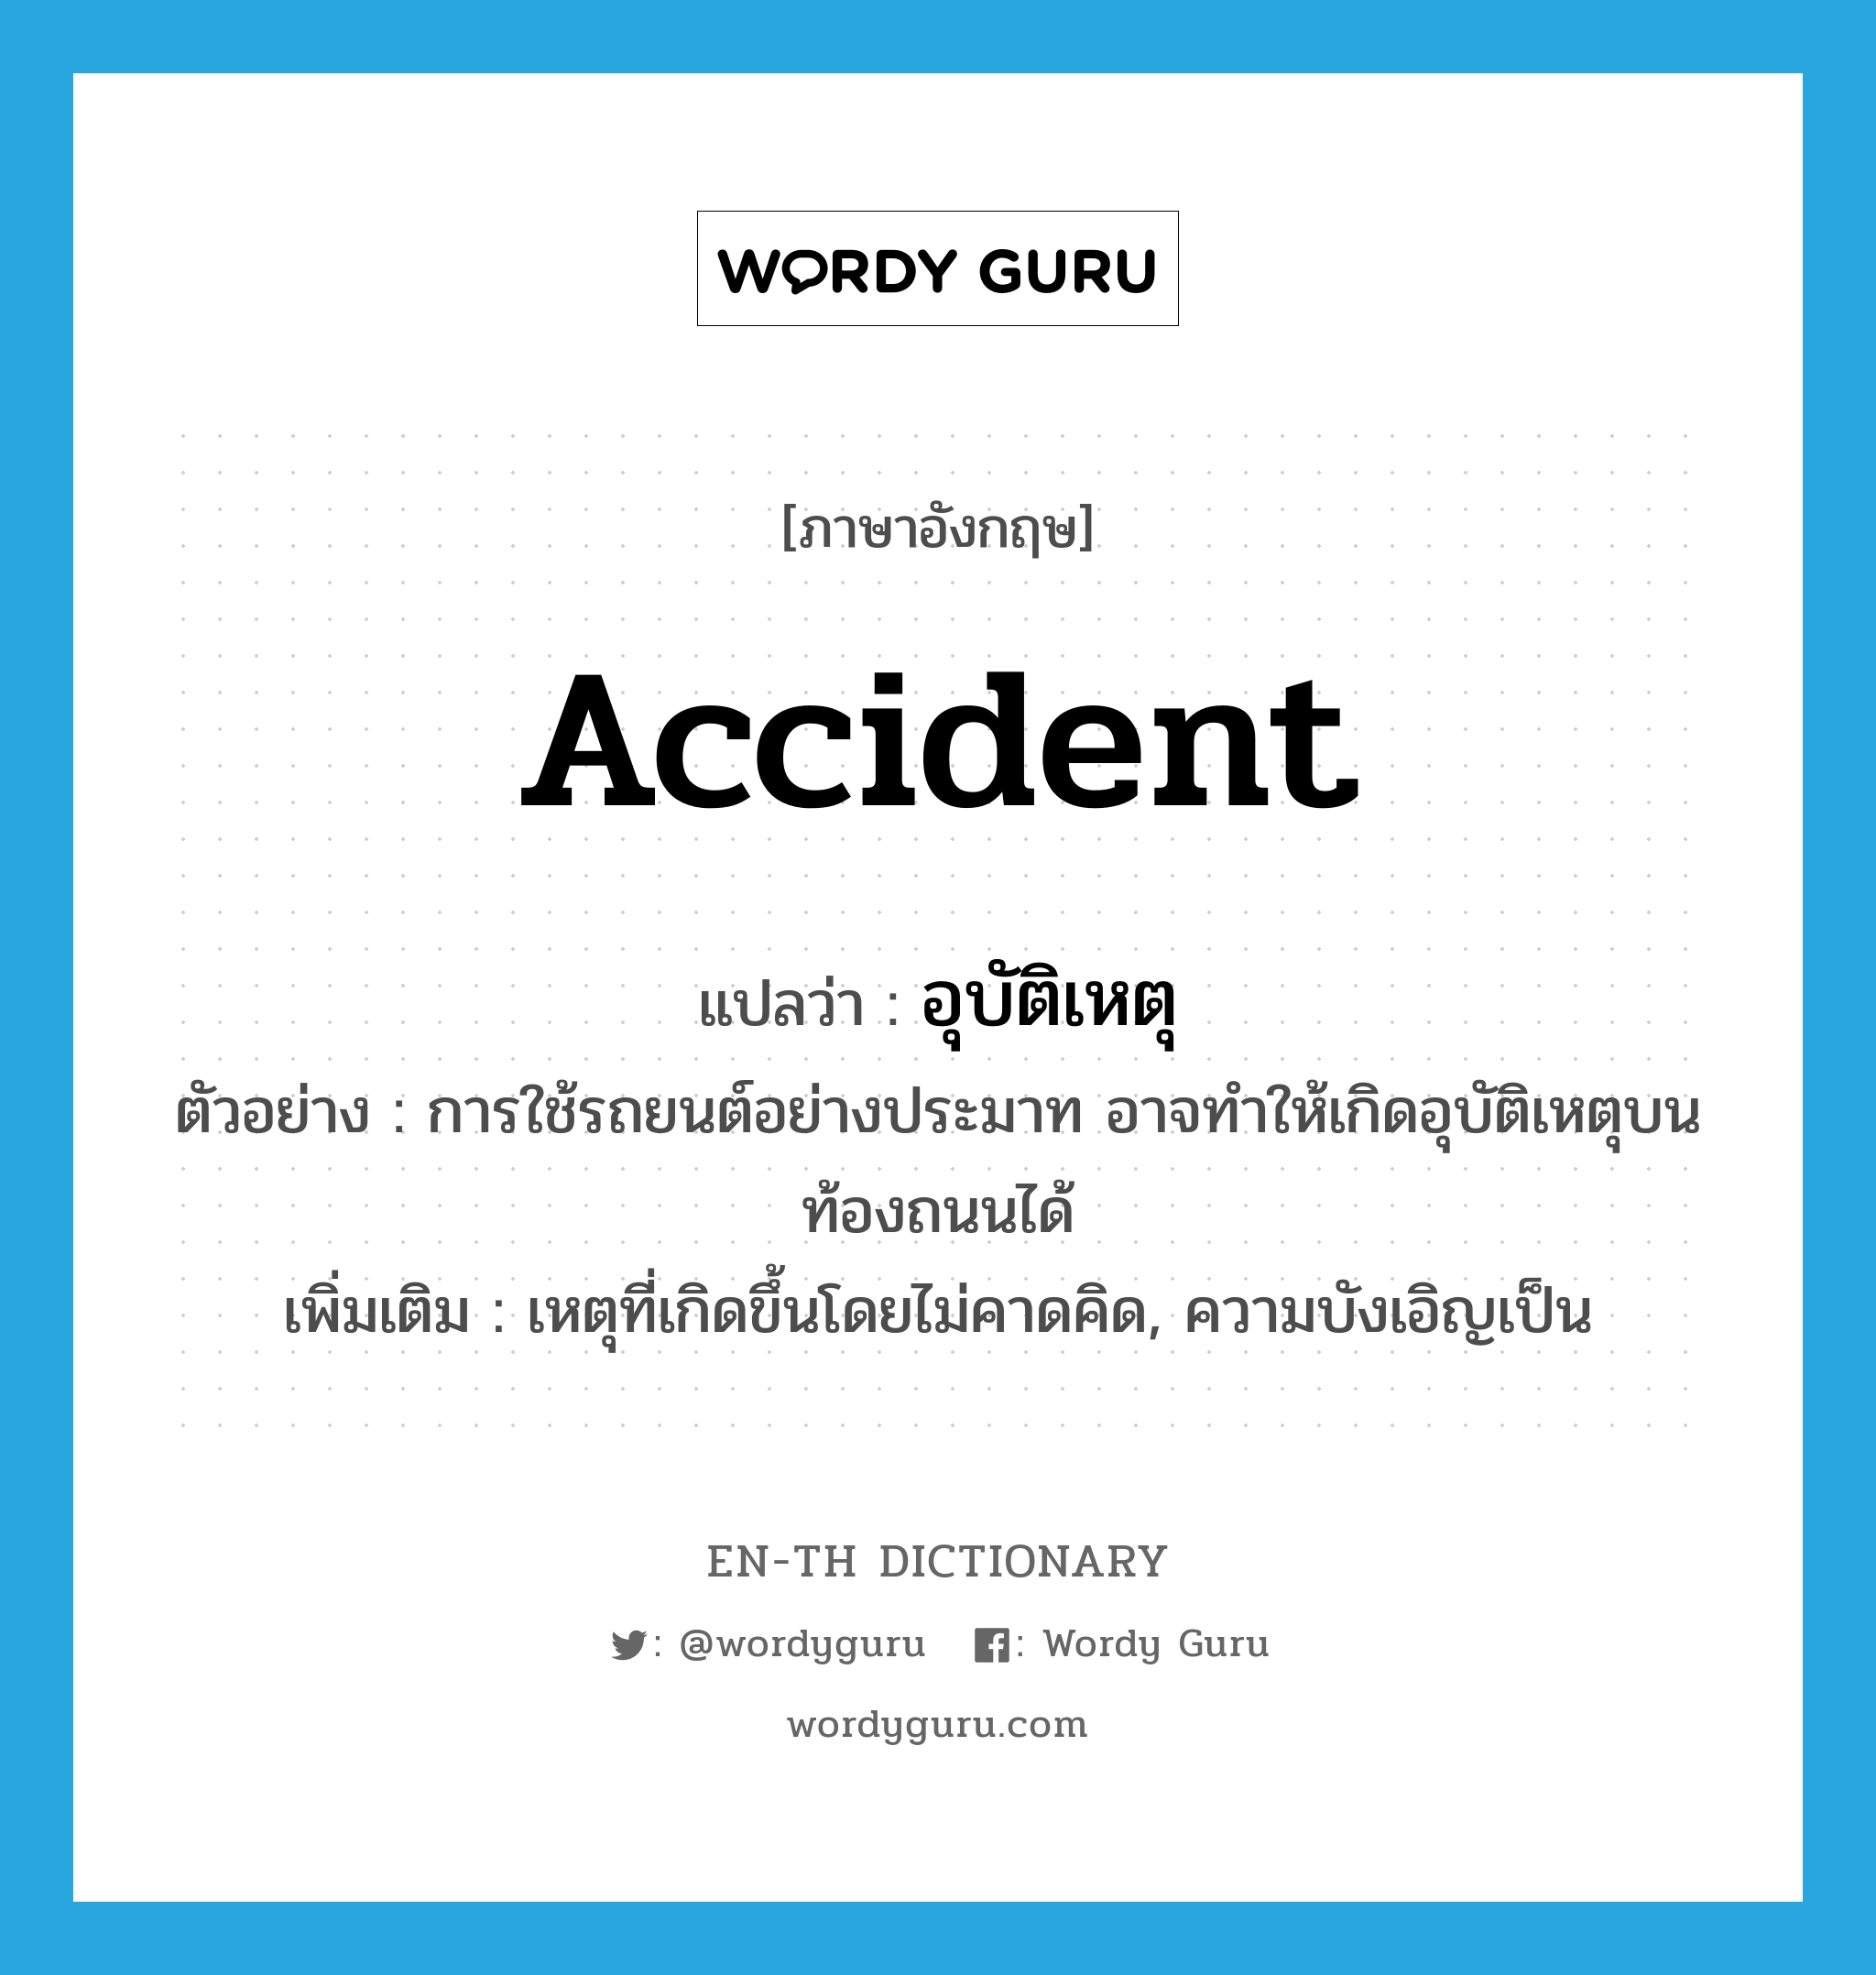 accident แปลว่า?, คำศัพท์ภาษาอังกฤษ accident แปลว่า อุบัติเหตุ ประเภท N ตัวอย่าง การใช้รถยนต์อย่างประมาท อาจทำให้เกิดอุบัติเหตุบนท้องถนนได้ เพิ่มเติม เหตุที่เกิดขึ้นโดยไม่คาดคิด, ความบังเอิญเป็น หมวด N